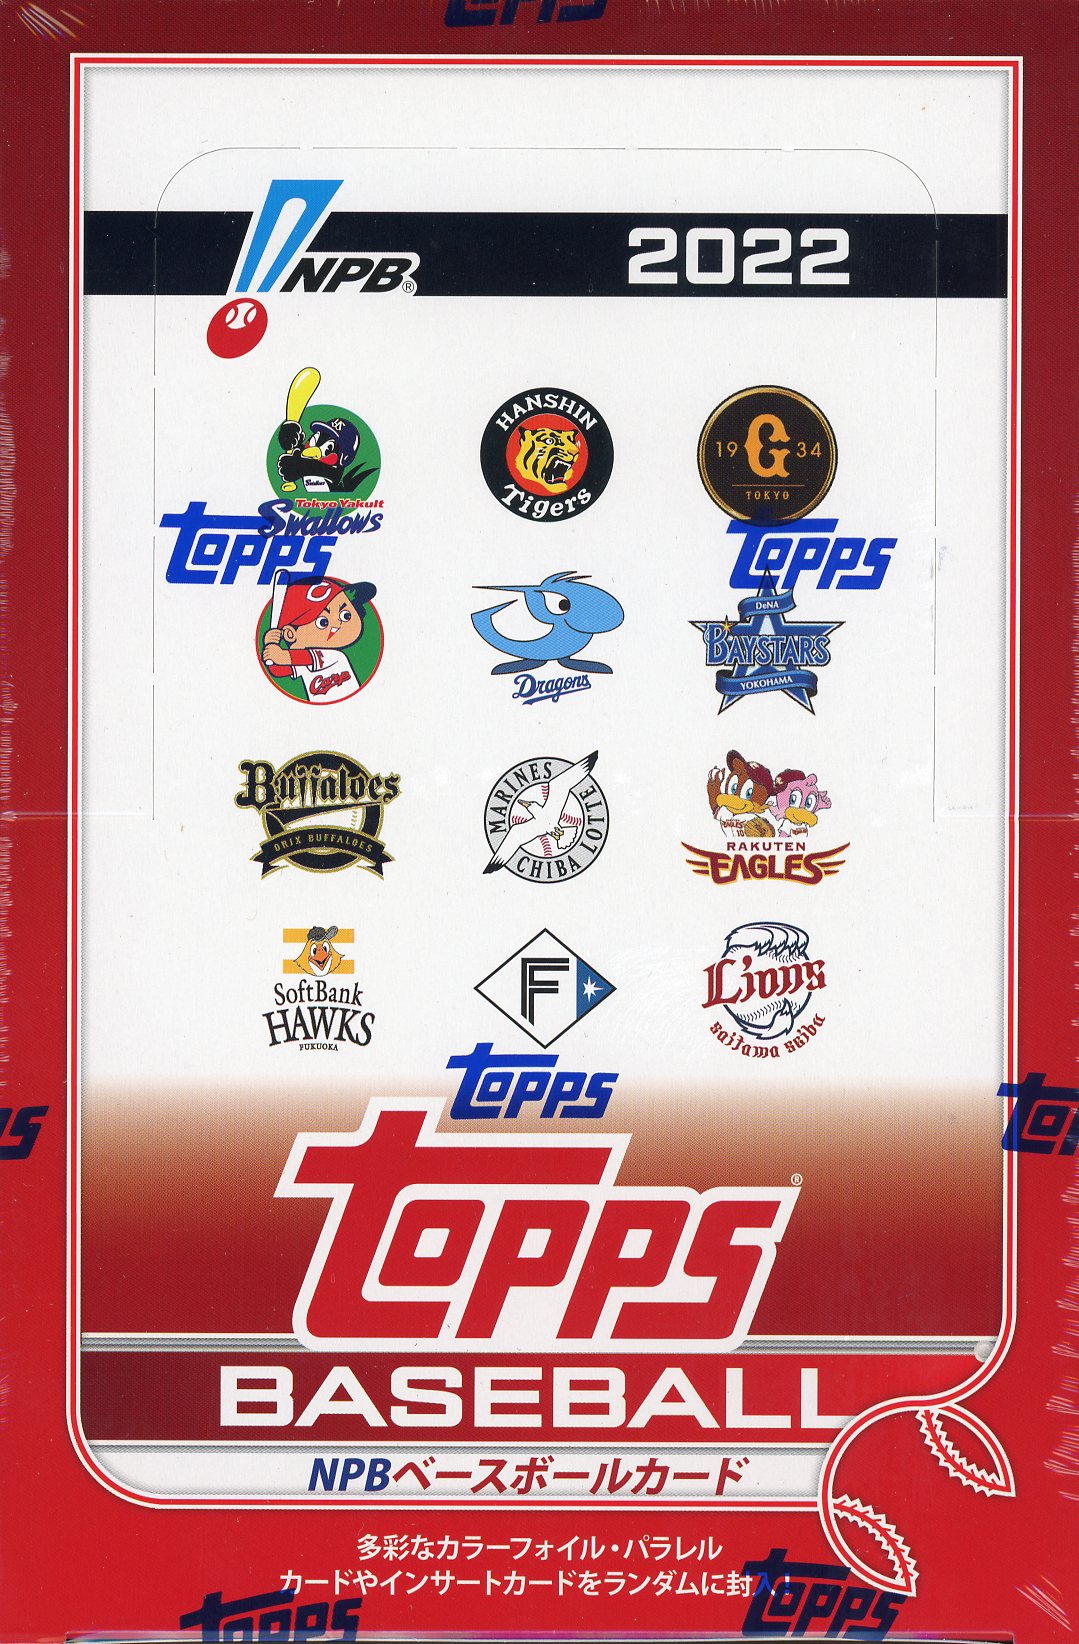 ⚾ 2022 TOPPS NPB ベースボールカード【製品情報】 | Trading Card 